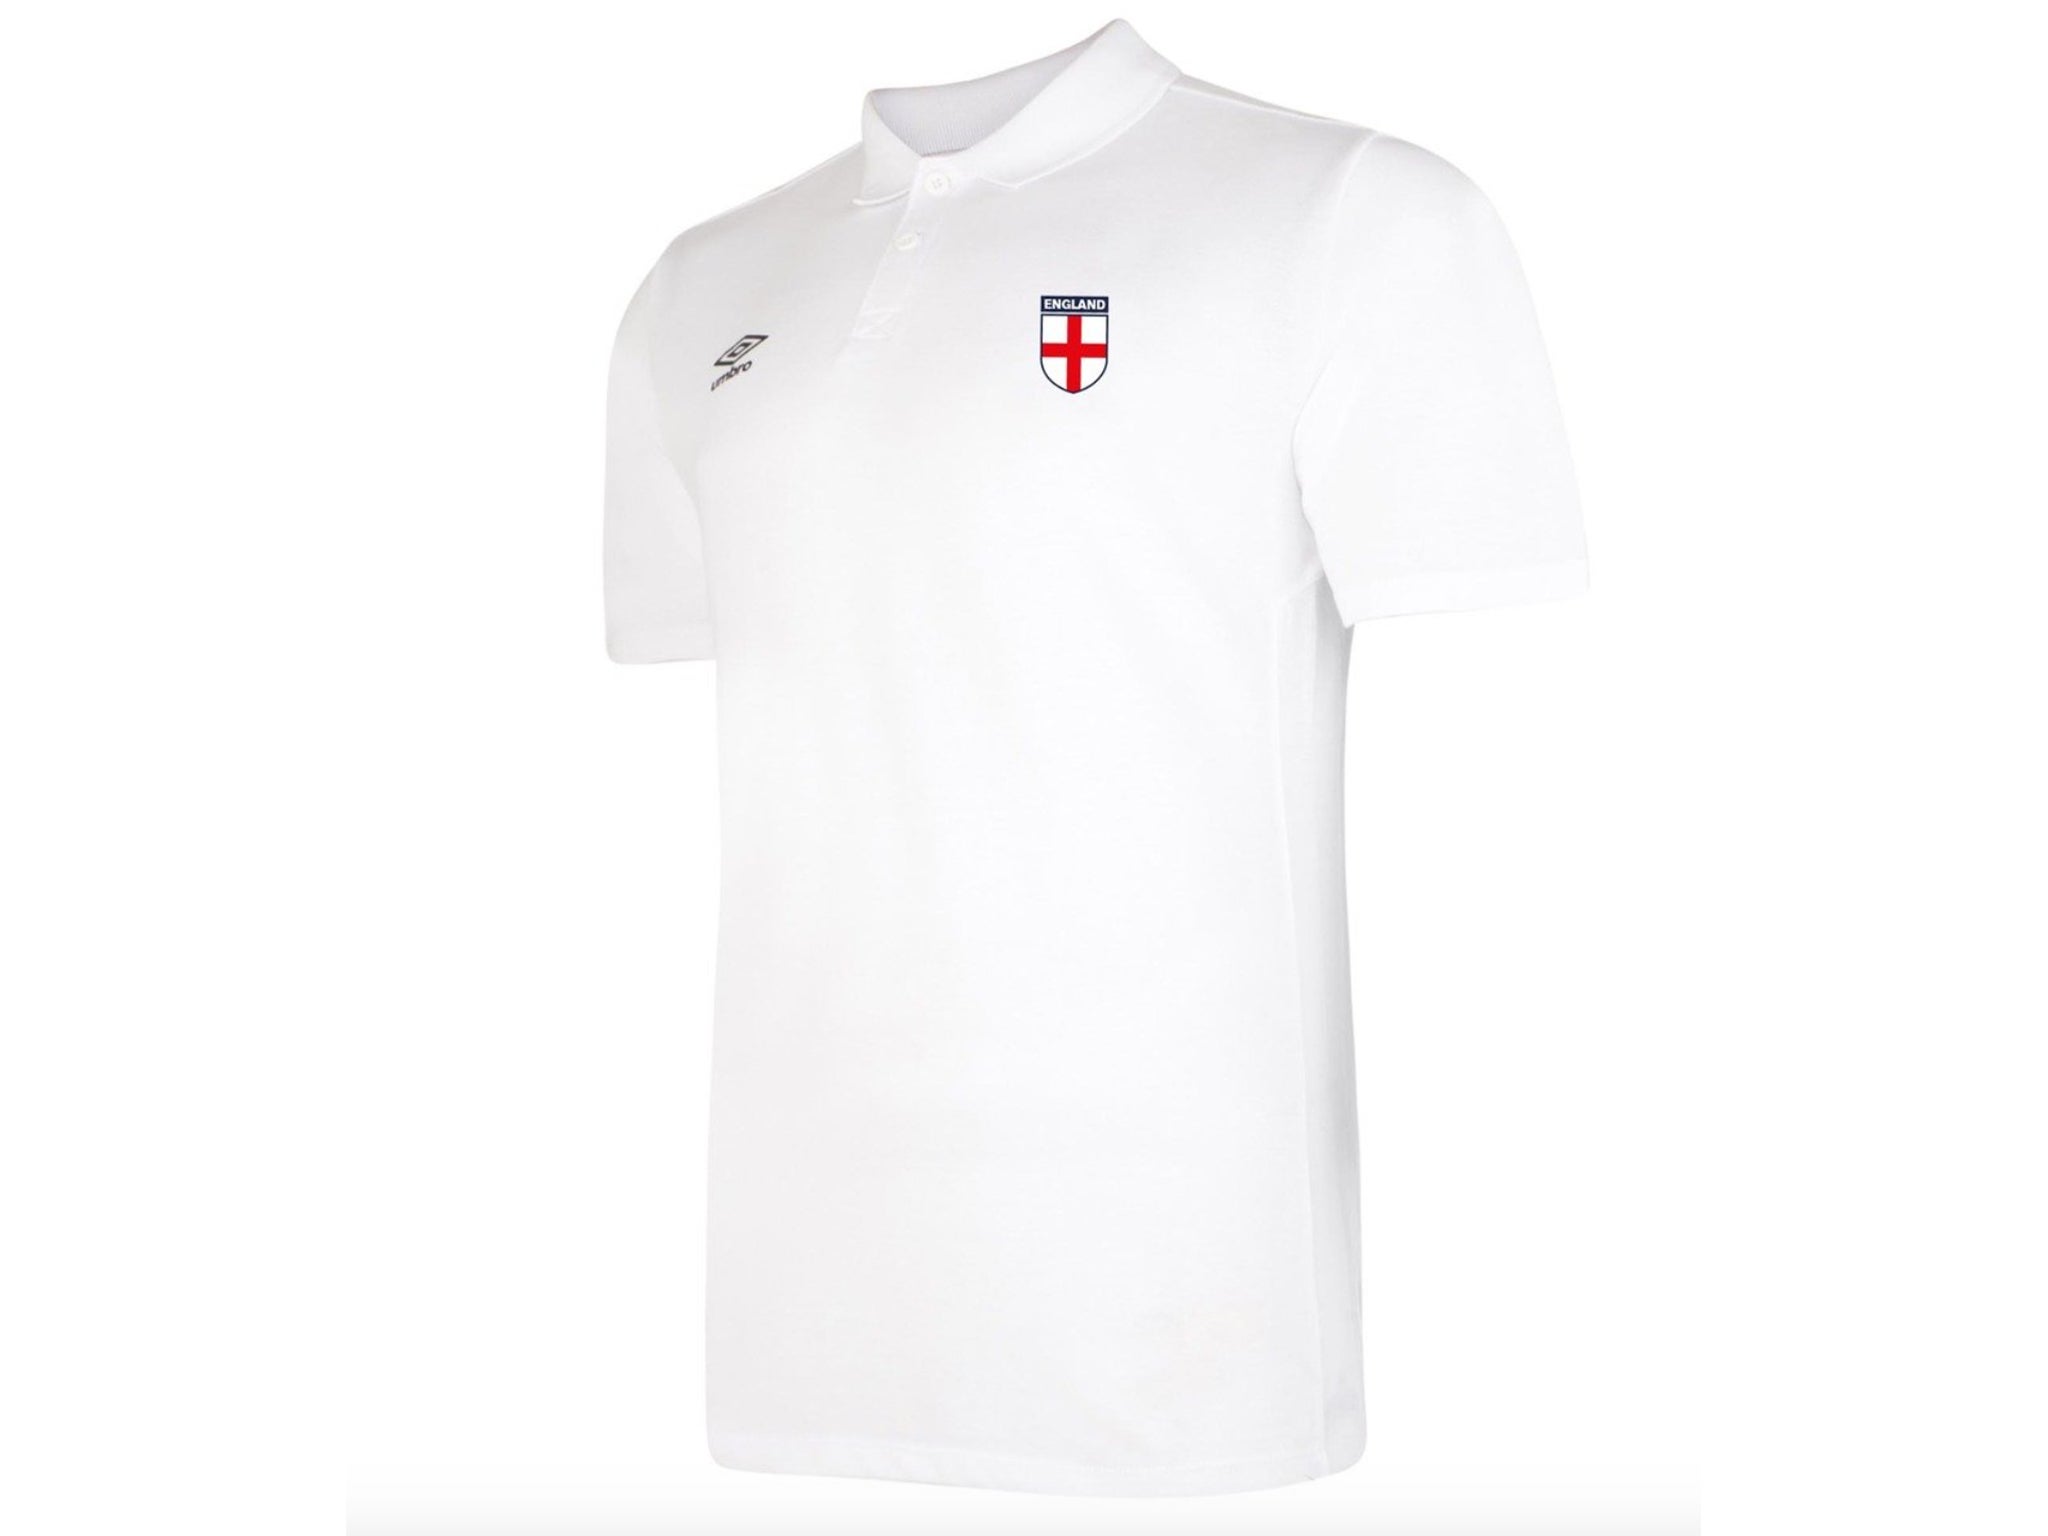 Children's T Shirt World Cup Mens White Tee ENGLAND KIDS FOOTBALL T-SHIRT 